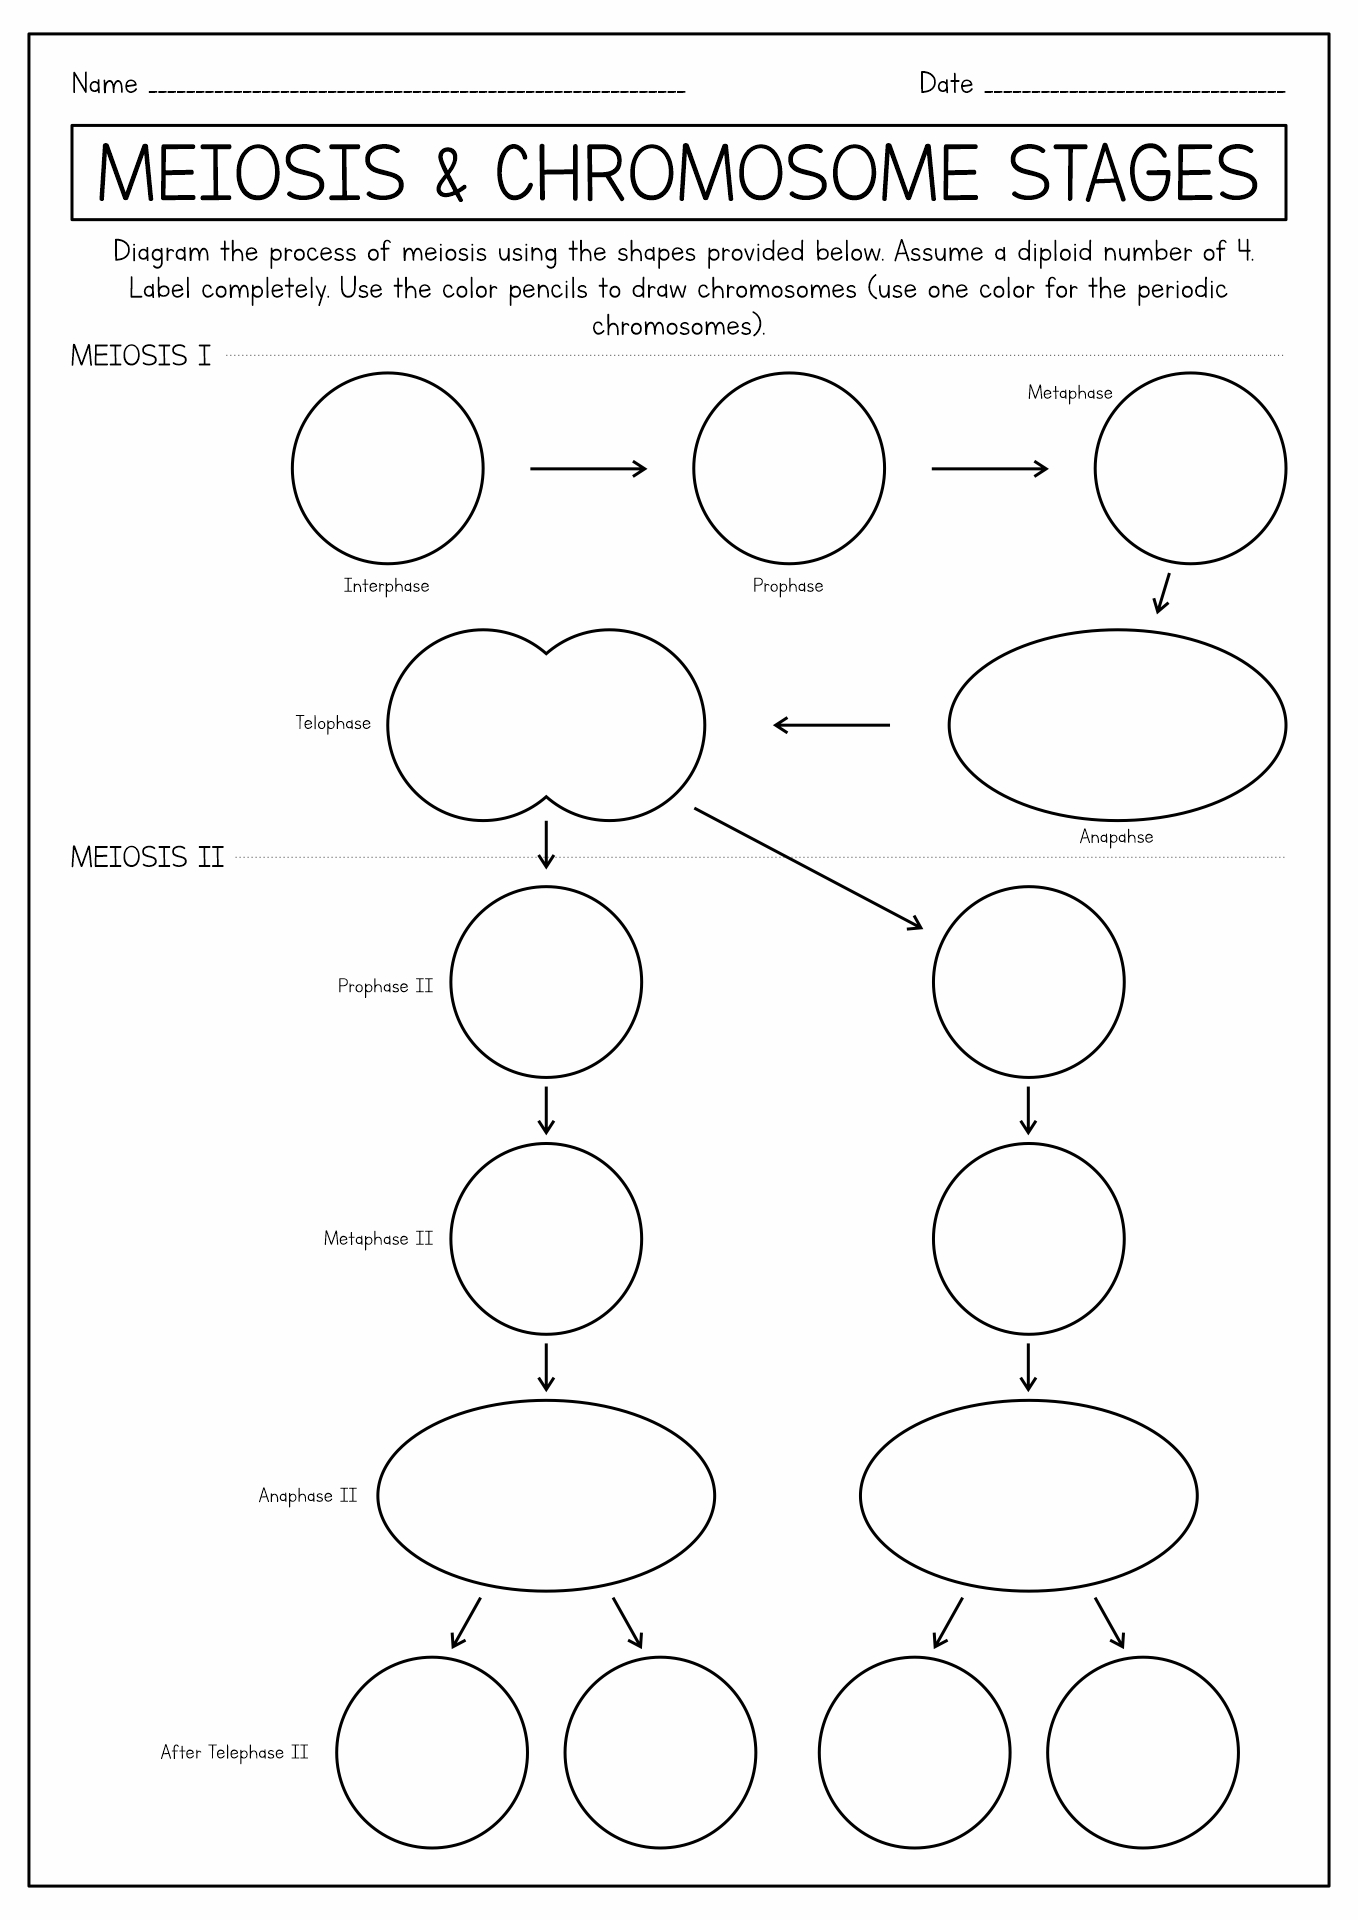 Meiosis Stages Worksheet Image